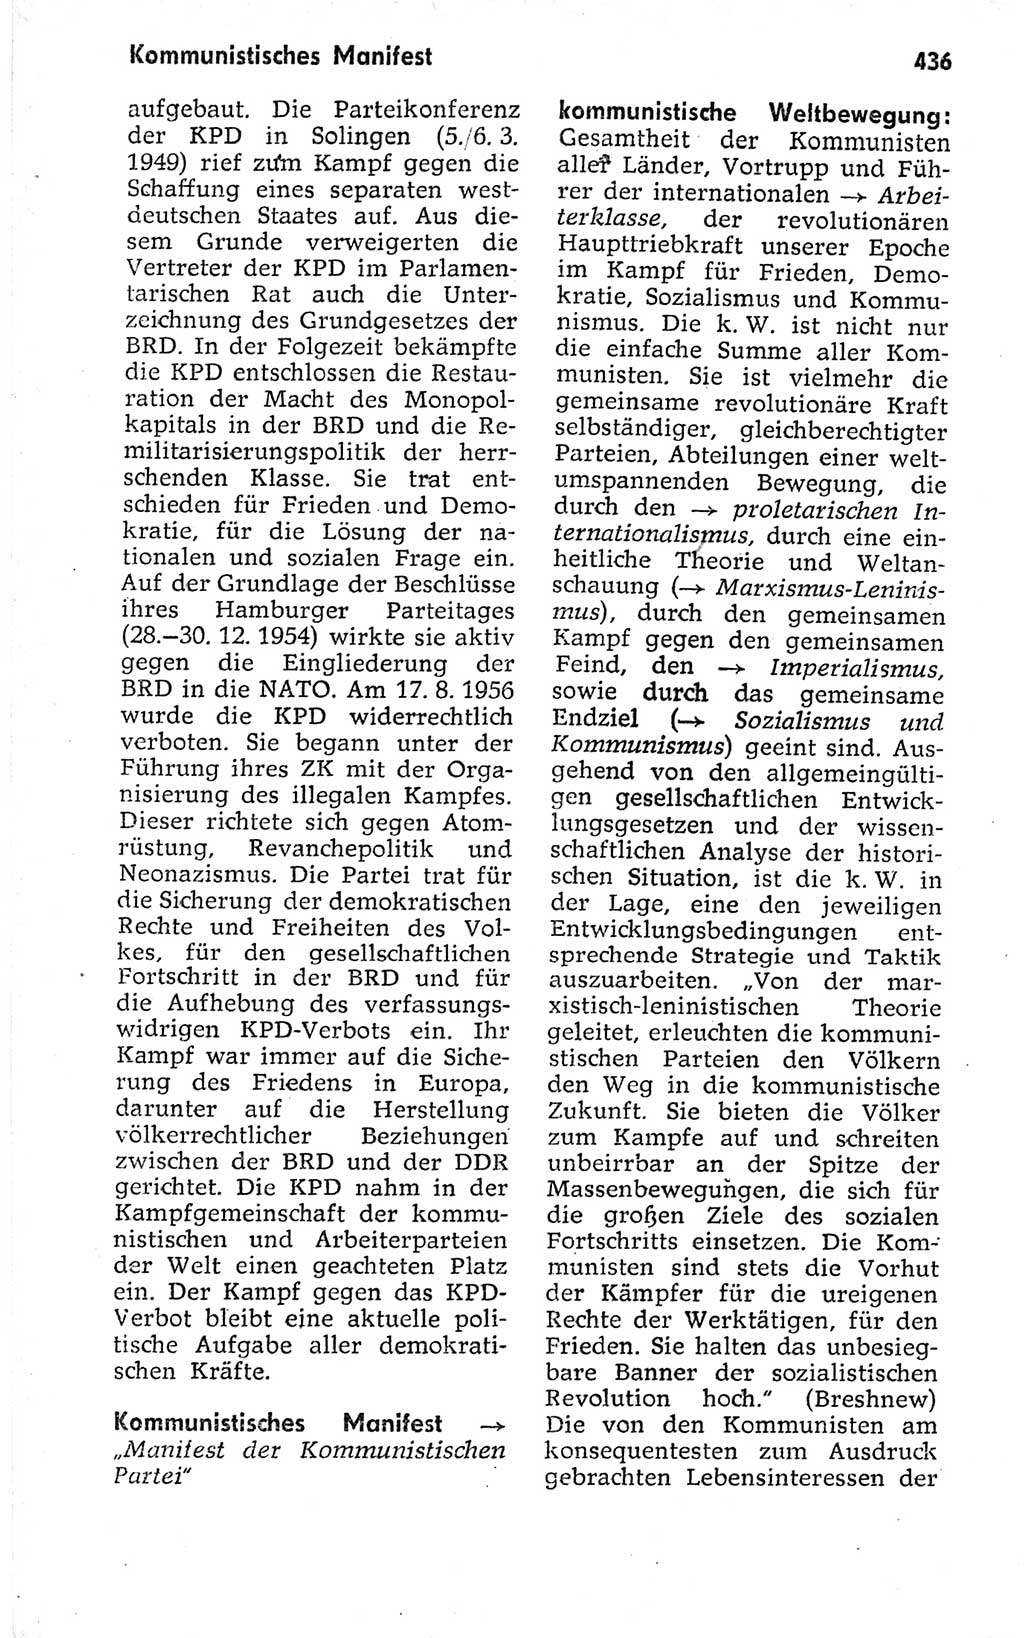 Kleines politisches Wörterbuch [Deutsche Demokratische Republik (DDR)] 1973, Seite 436 (Kl. pol. Wb. DDR 1973, S. 436)